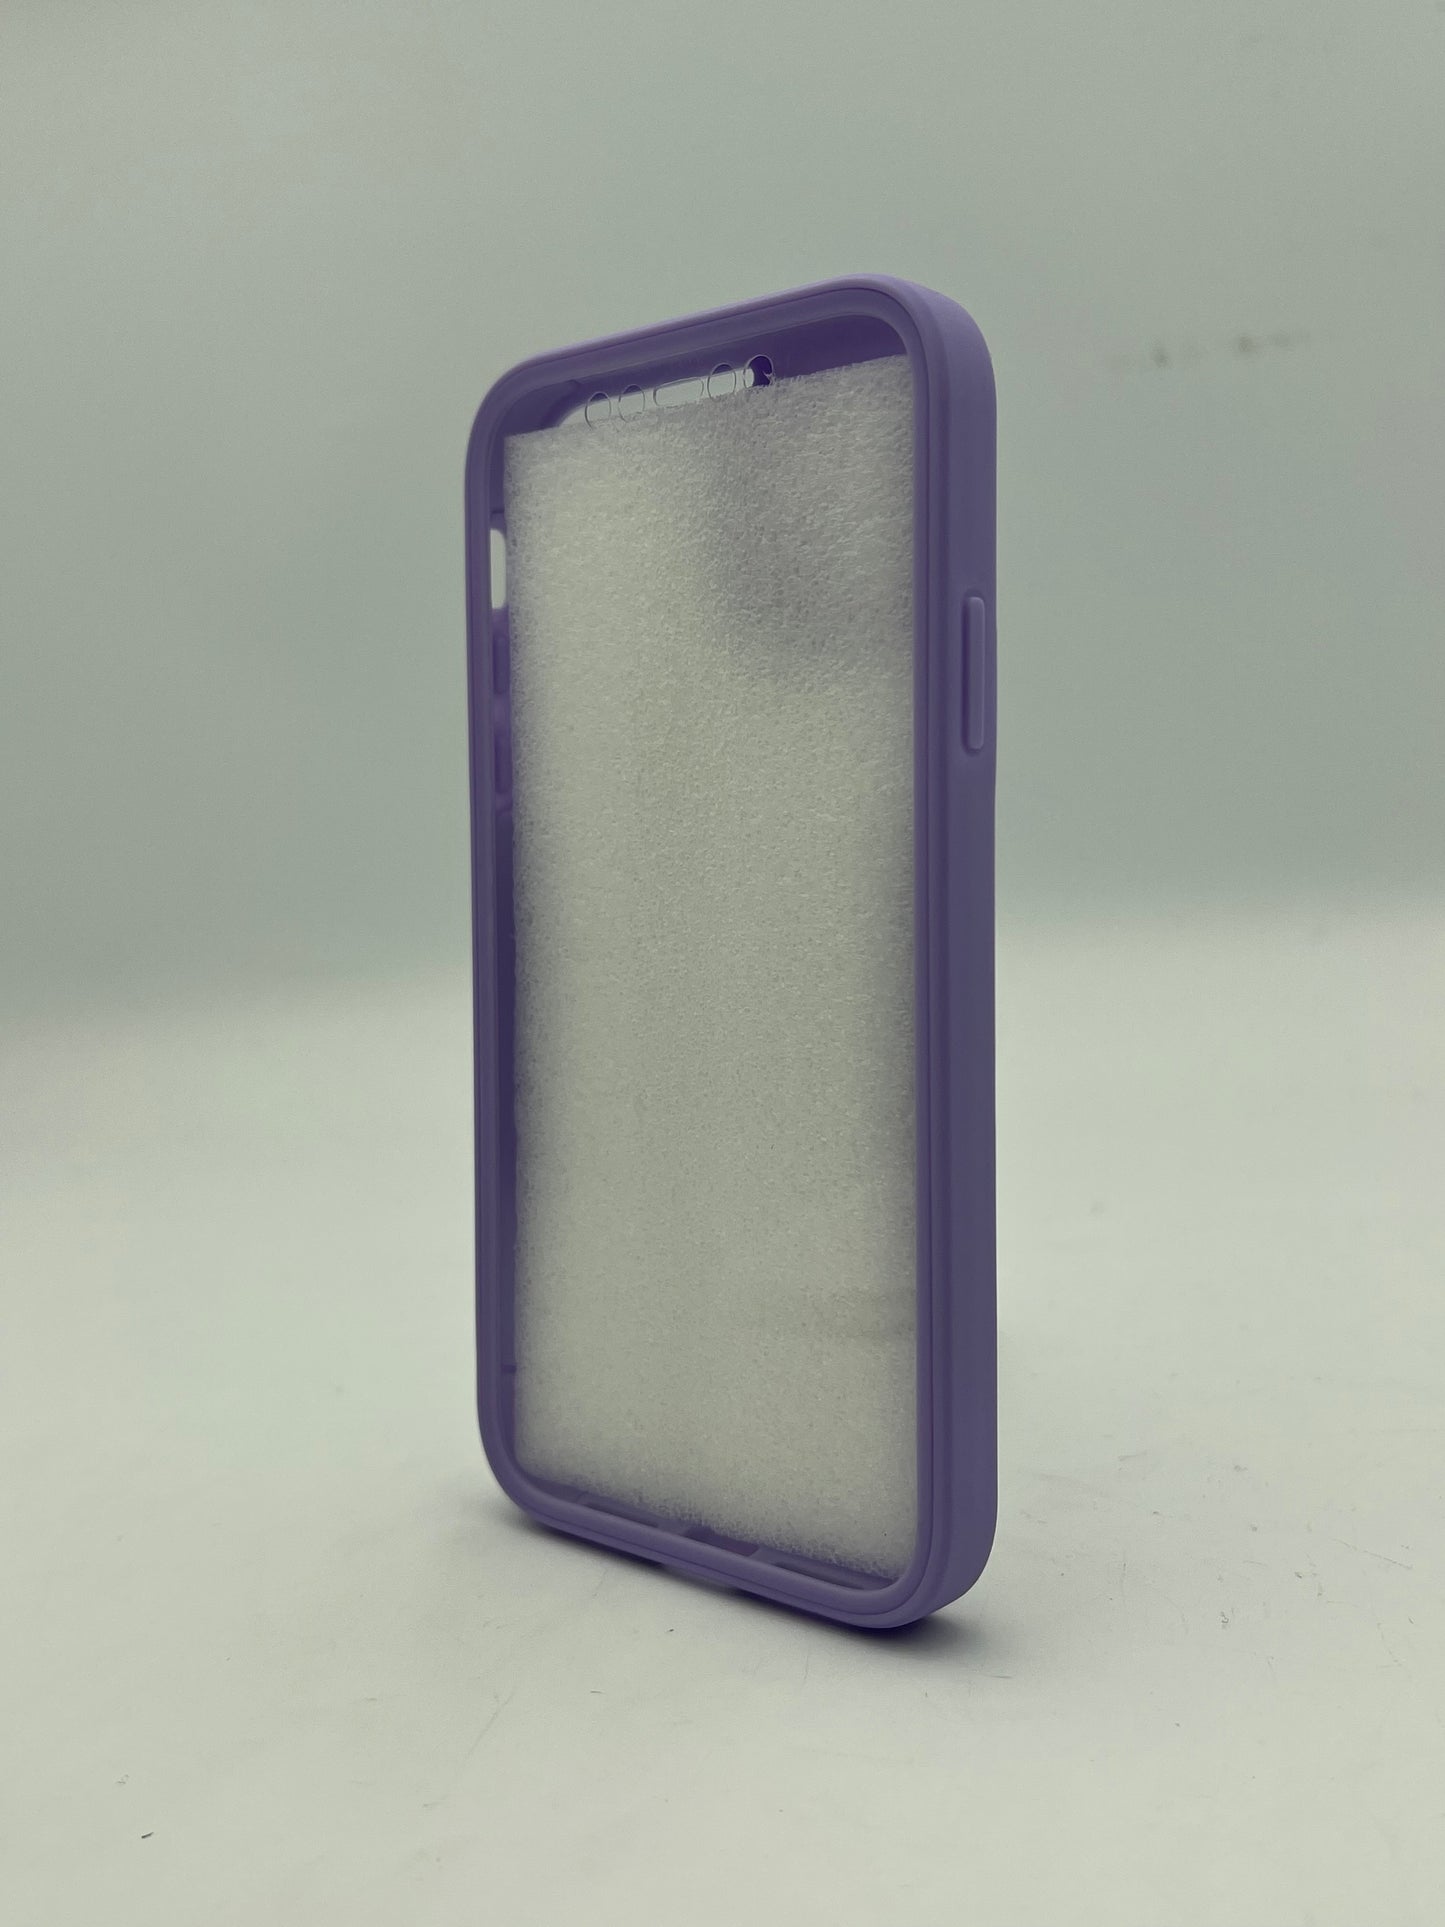 iPhone 11 360 case